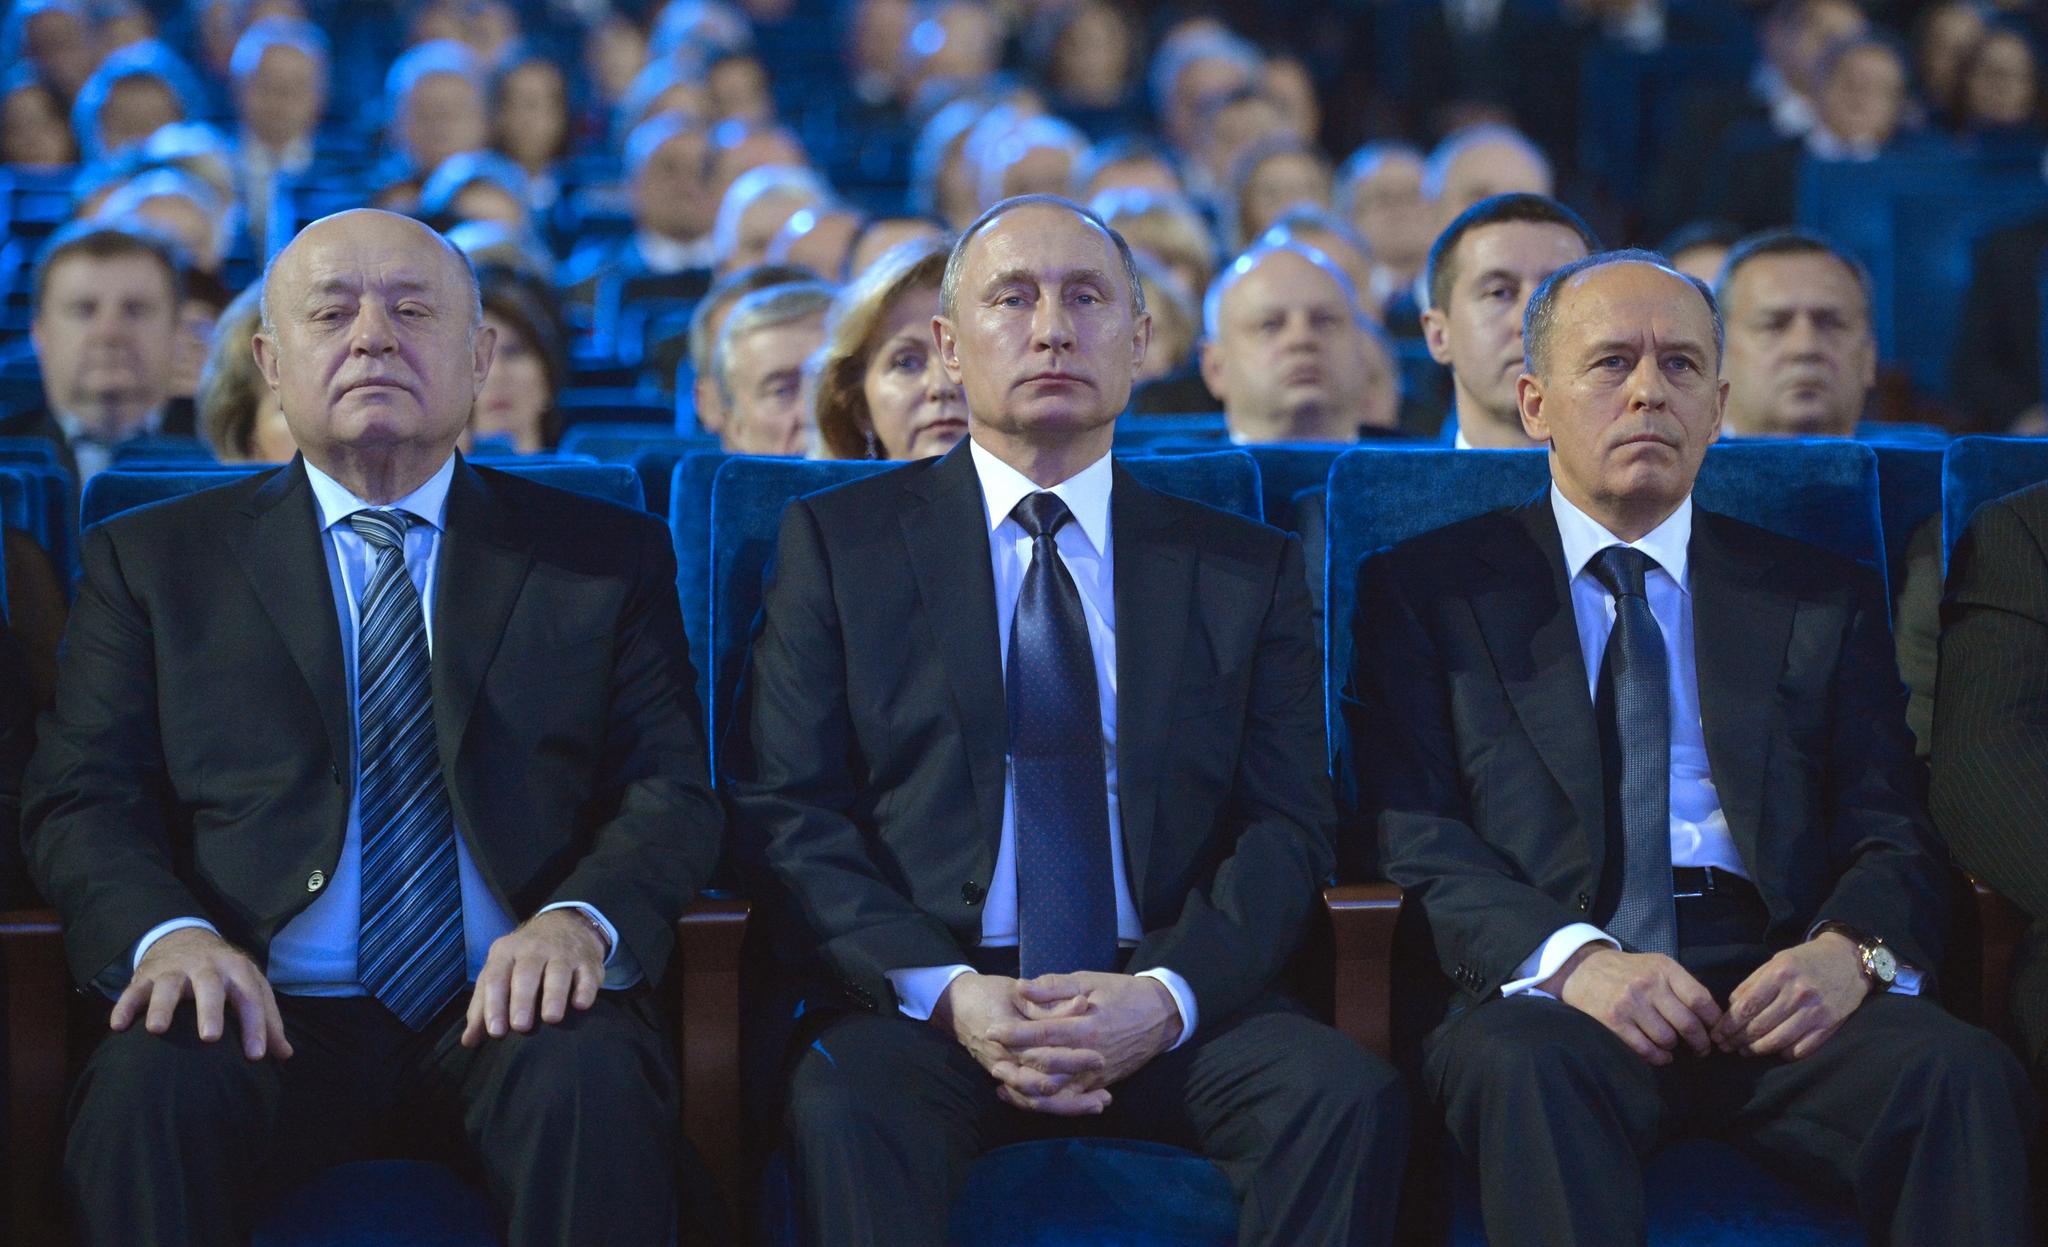 FSB-sjef Aleksandr Bortnikov (t.h.) sammen med Russlands president Vladimir Putin (i midten) og etterretningssjef Mikhail Fradkov (t.v.) under en konsert i Moskva 29. desember 2015.